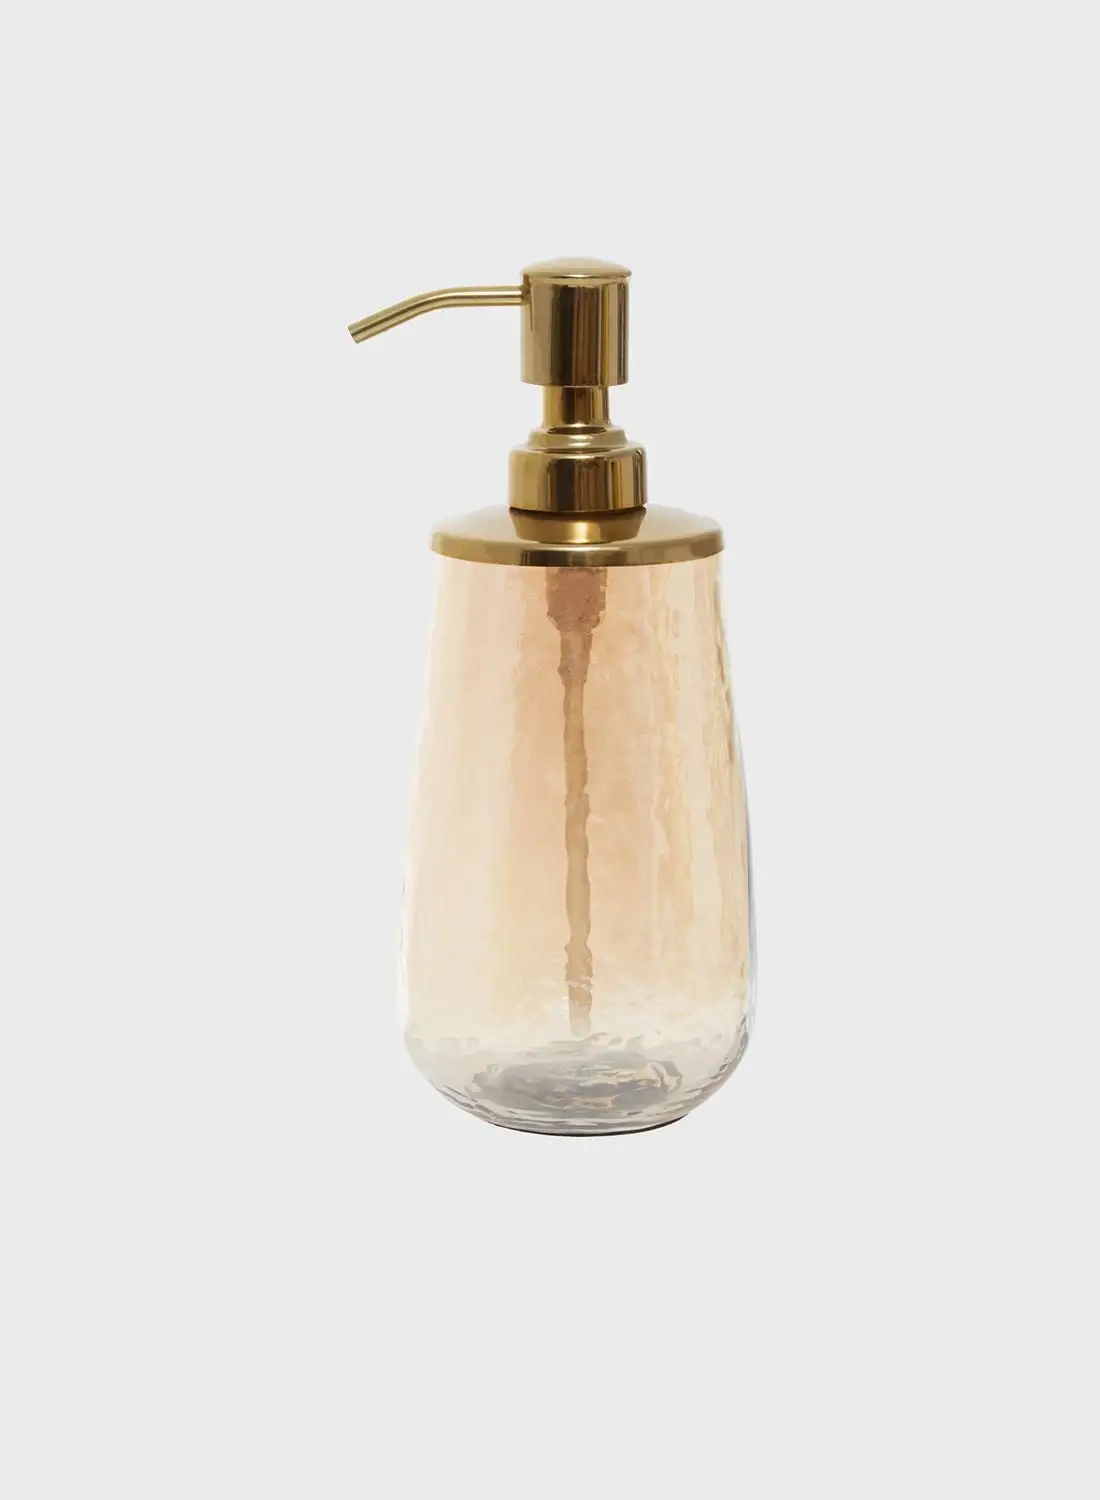 Premier Allegra Gold Glass Soap Dispenser